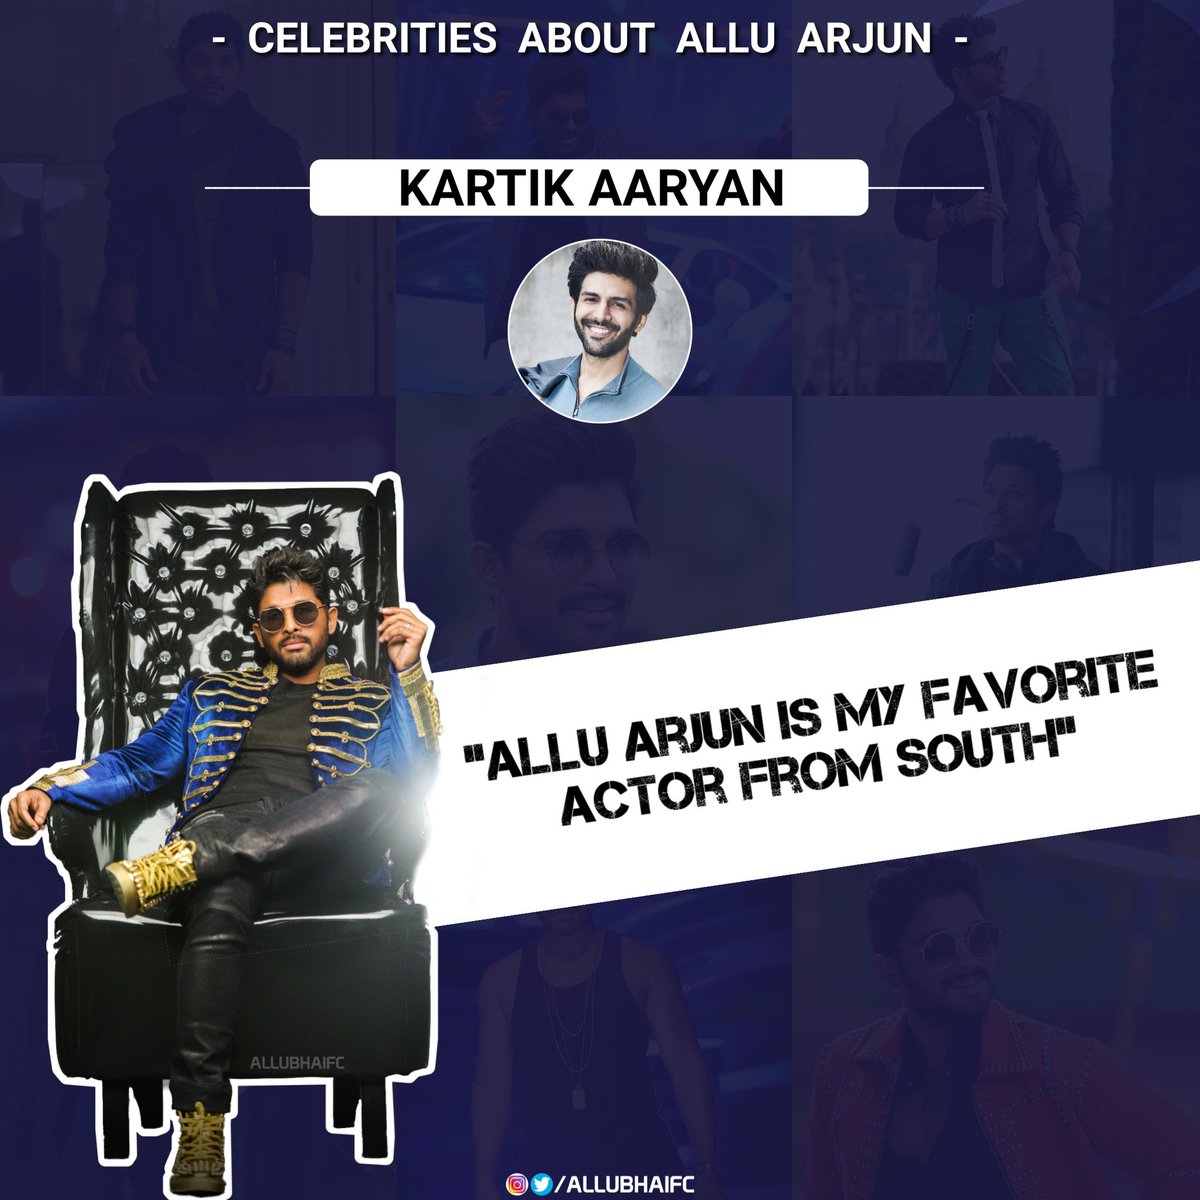 Chocolate Boy Of BTown  @TheAaryanKartik About Stylish  Allu Arjun !! #IndianStyleIconAlluArjun @alluarjun